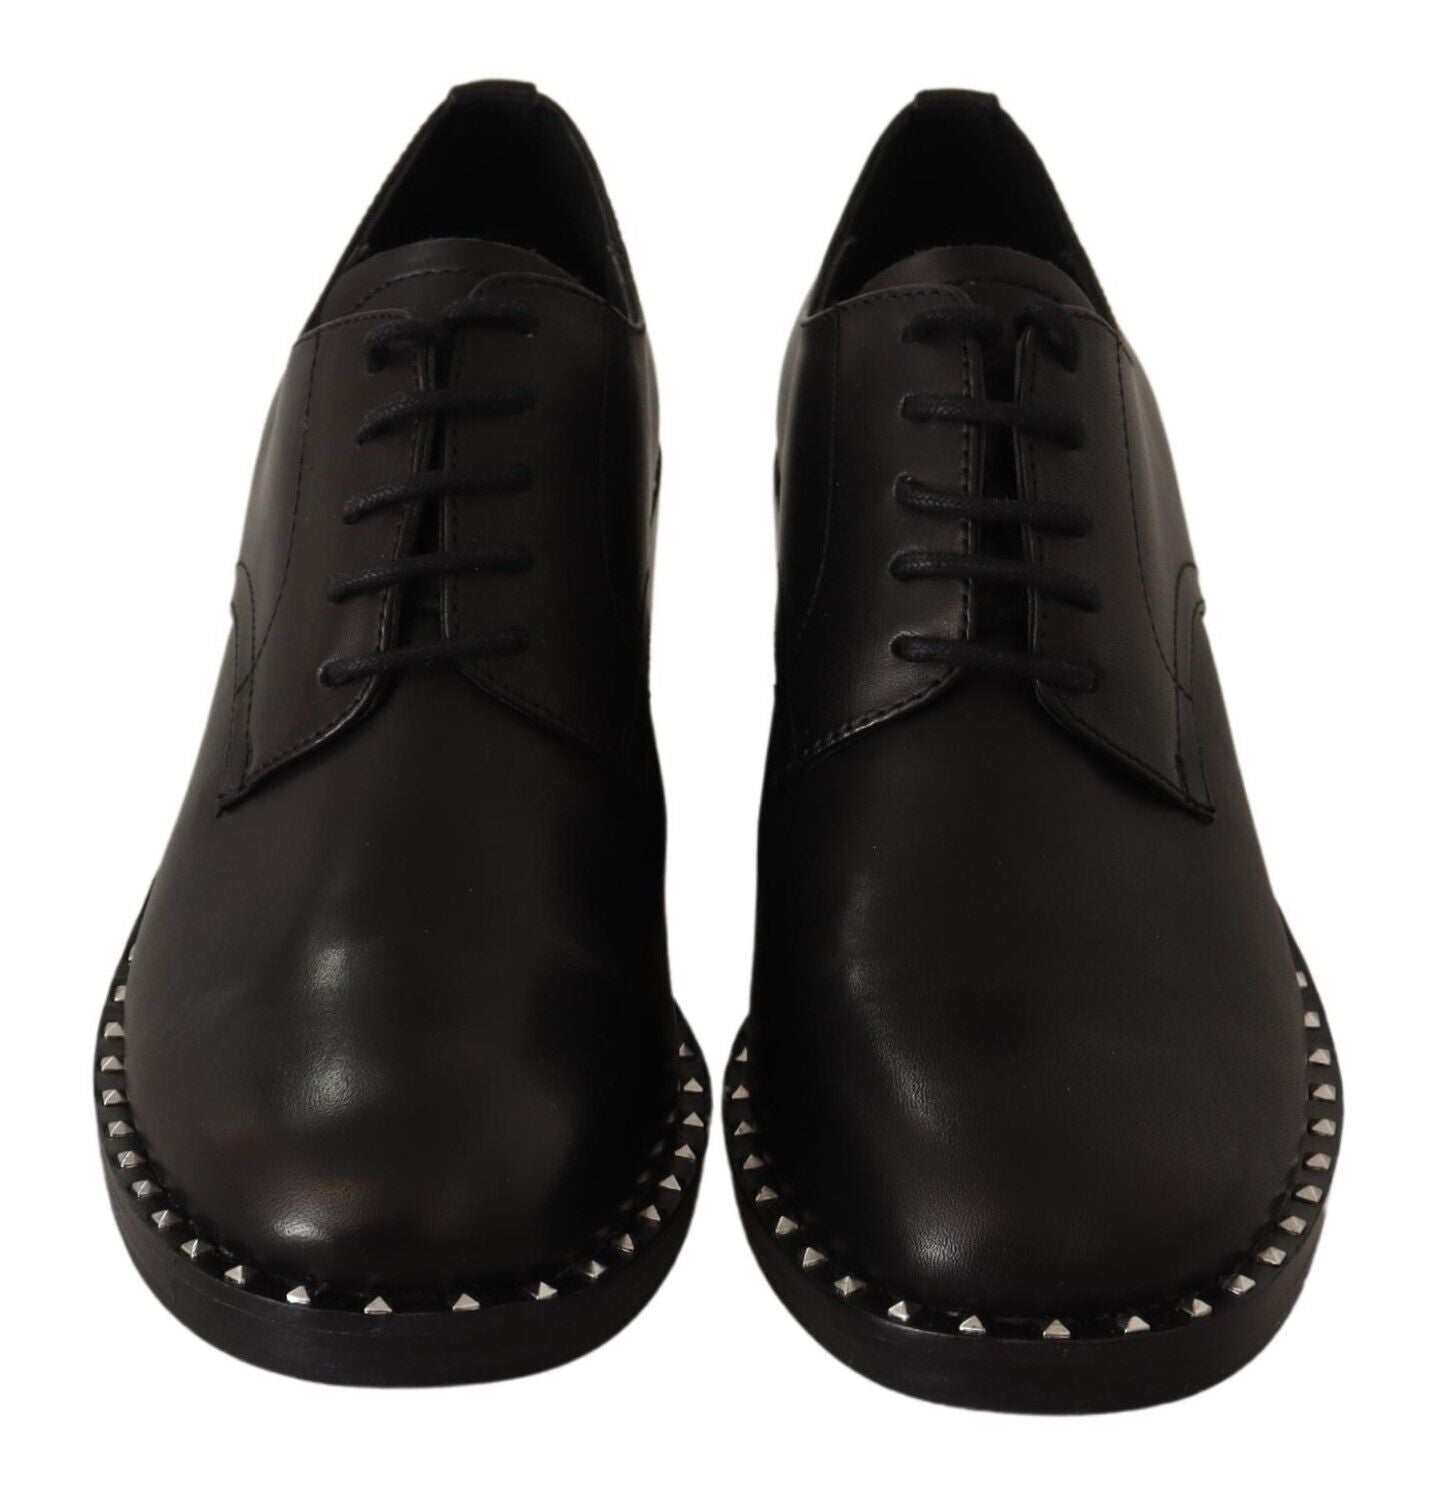 Asche schwarzer Lederblock mittelschweren Schnürenschuh Schuhen Schnüren